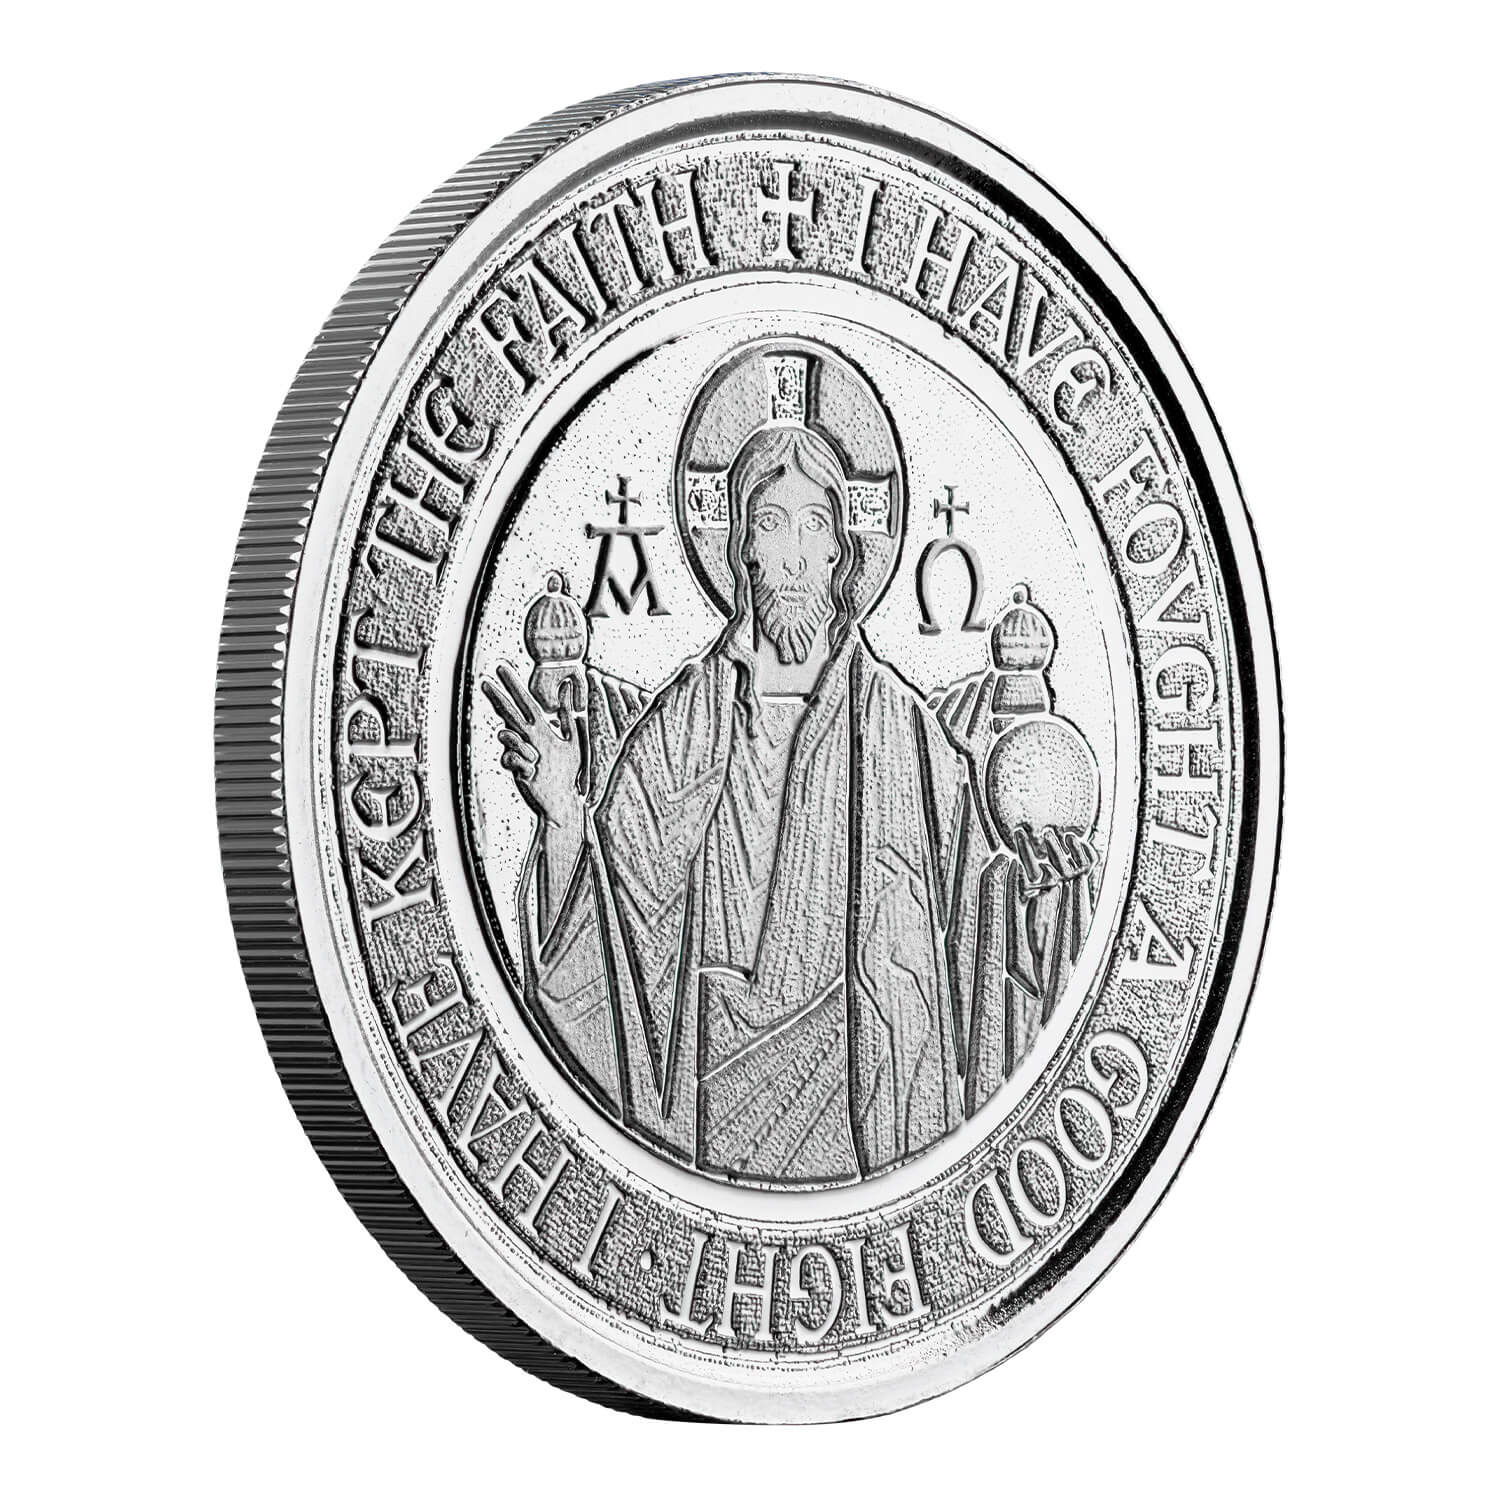 2020 Congo Silverback Gorilla 1 Oz Silver Coin (copy)